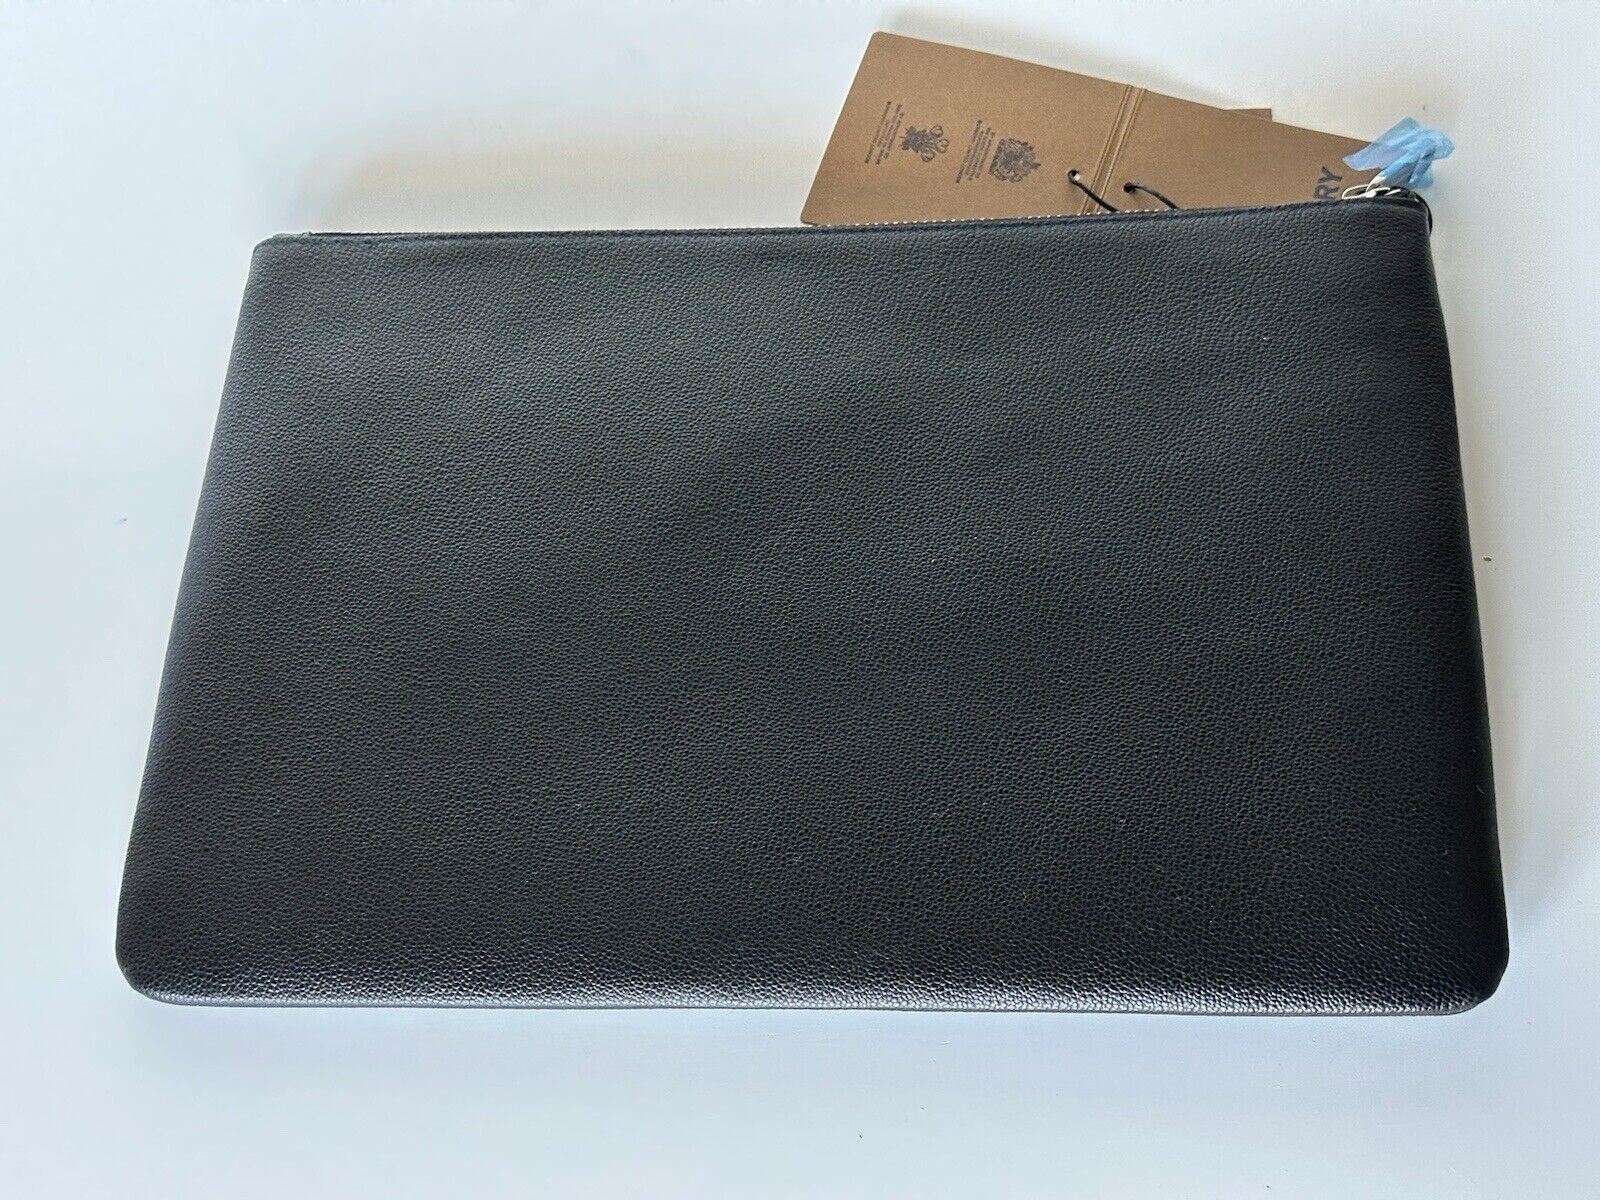 Черный кожаный клатч Burberry за 550 долларов NWT 80528831 